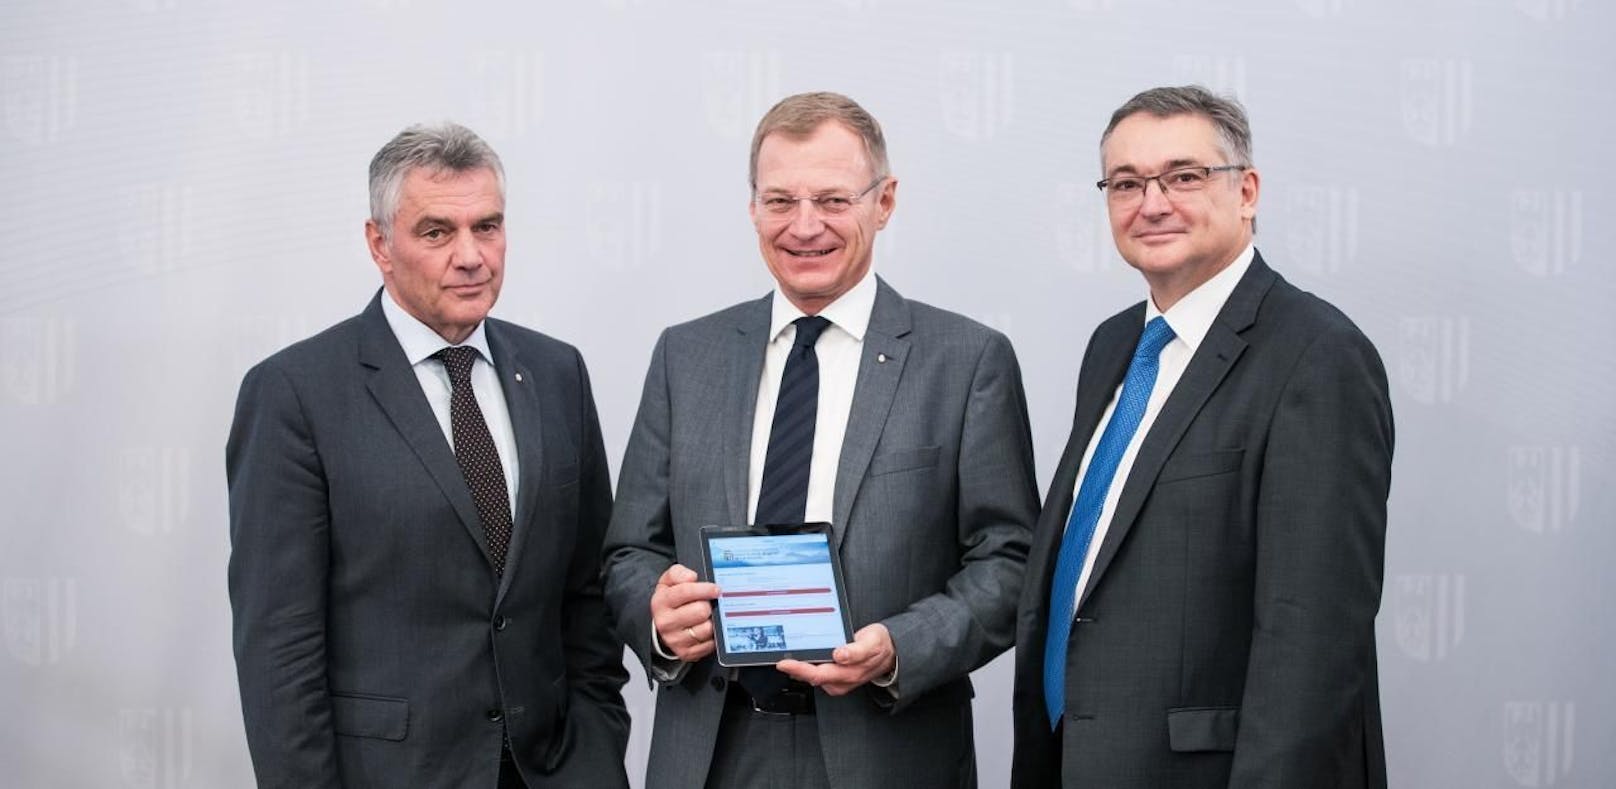 Landesamtsdirektor Erich Watzl, Landeshauptmann Thomas Stelzer und Roland Krenner, Leiter der Abteilung IT des Landes OÖ, präsentierten die App.